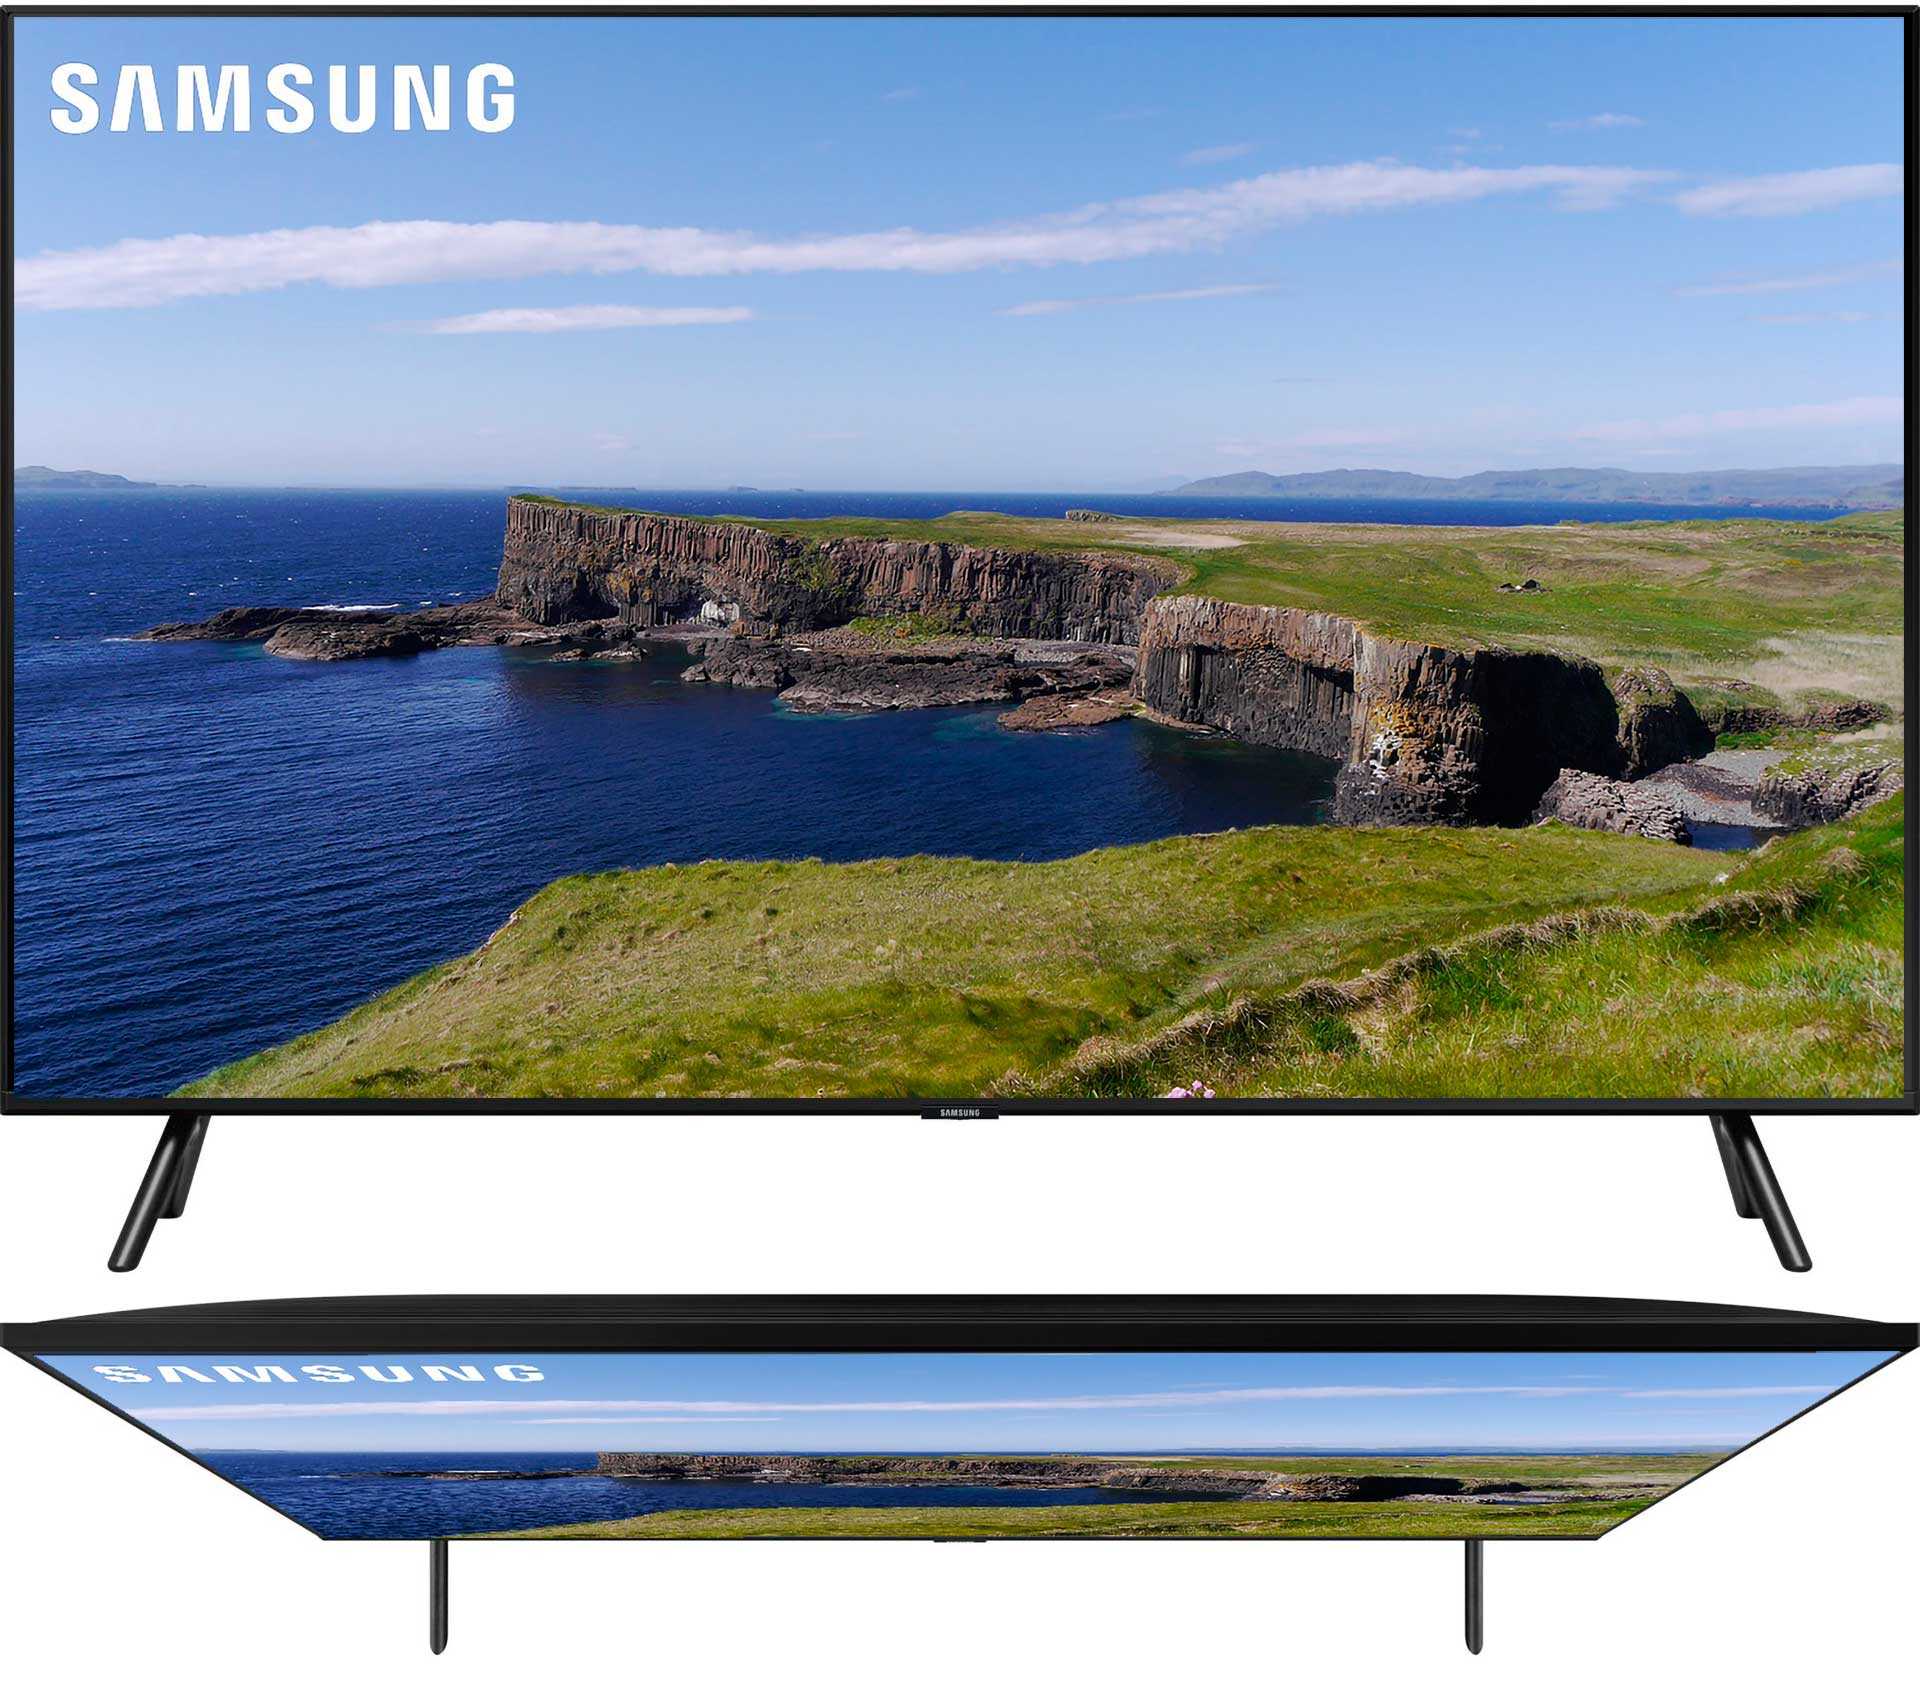 Samsung QE65Q77TAU - короткий но максимально информативный обзор Для большего удобства добавлены характеристики отзывы и видео